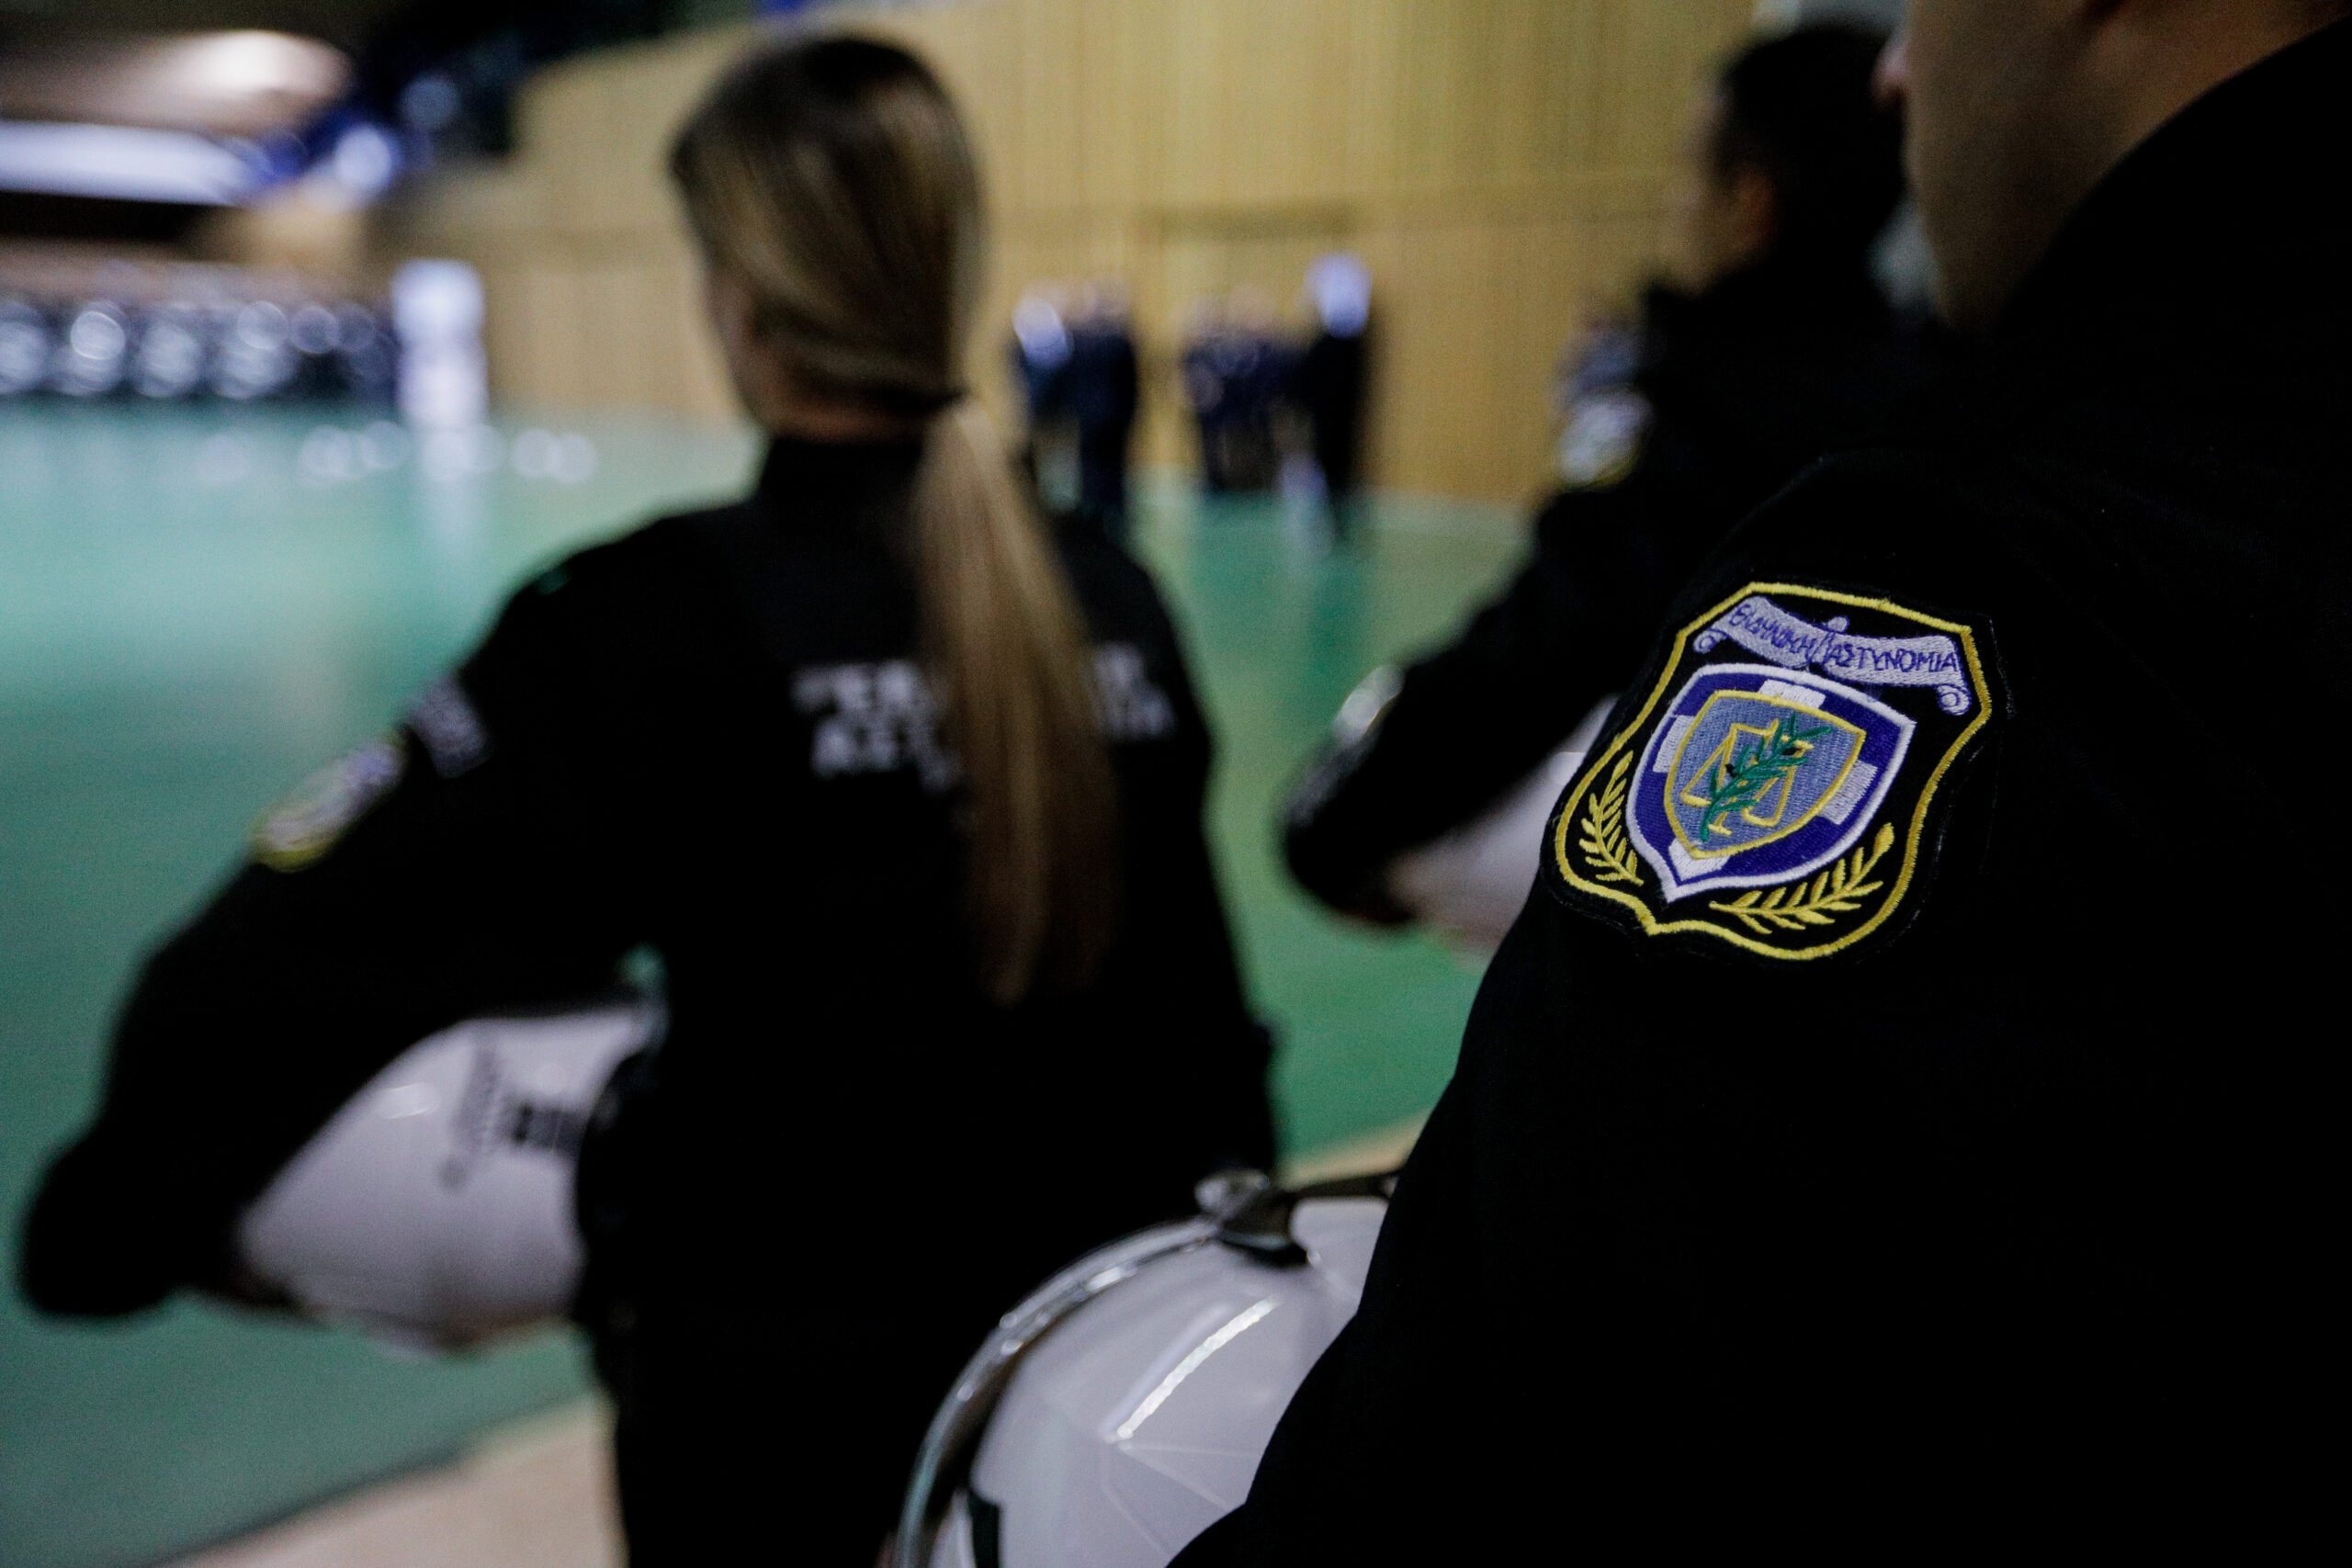 Αντιπρ. Ένωσης Αστυνομικών Αθήνας, Ν. Ρήγας: Δεν υπάρχει επίσημη καταγγελία για περιστατικό σεξουαλικής παρενόχλησης